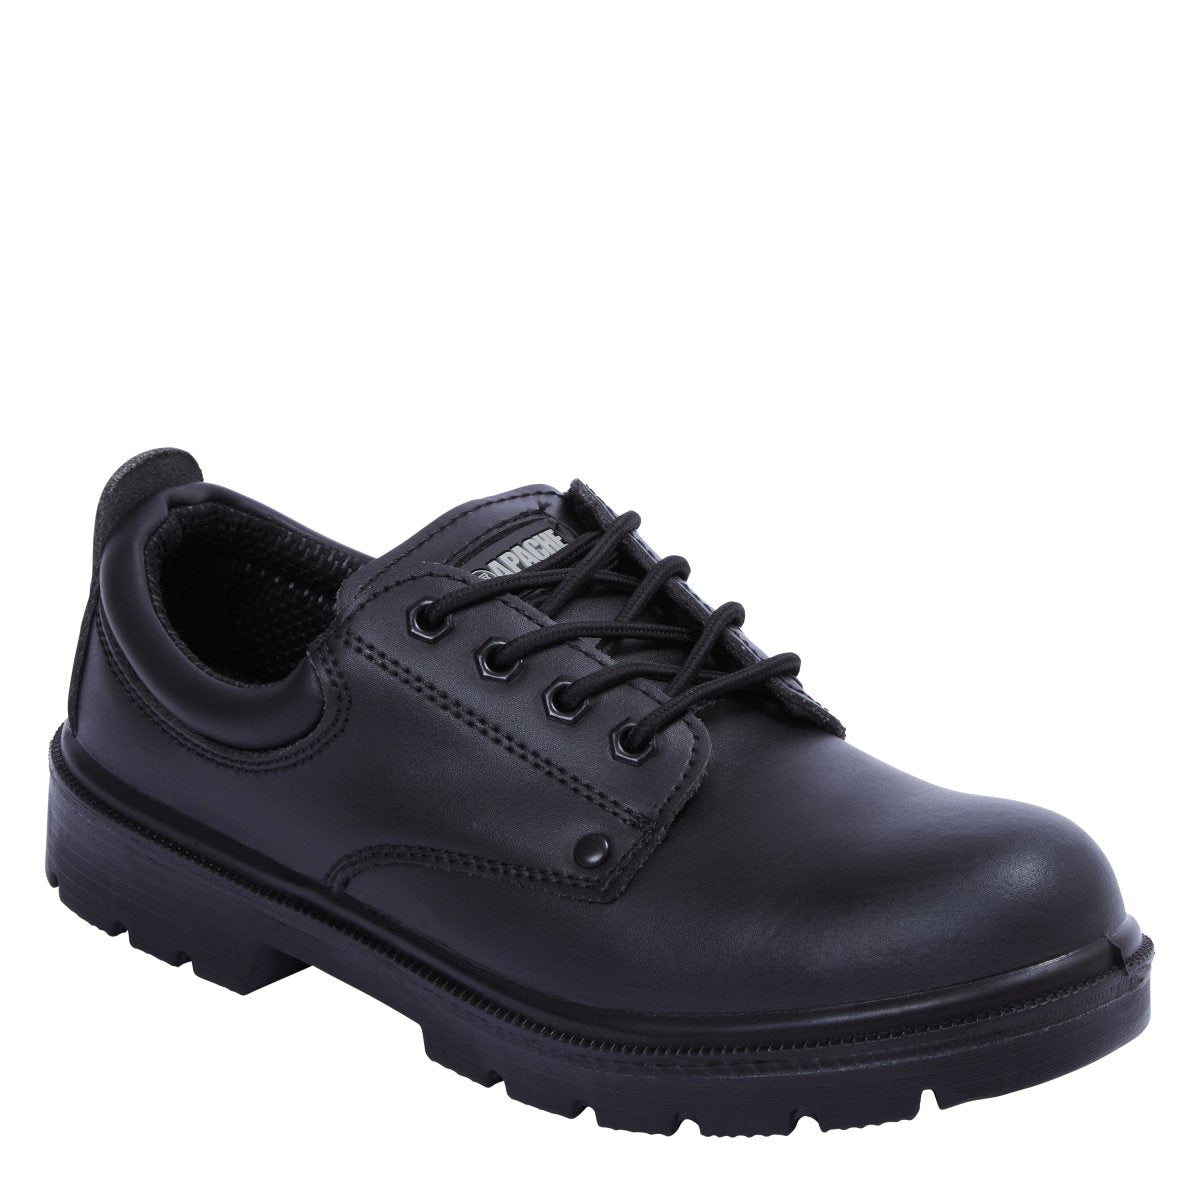 Apache AP306 Black Steel Toe Cap Safety Shoes - Shoe Store Direct